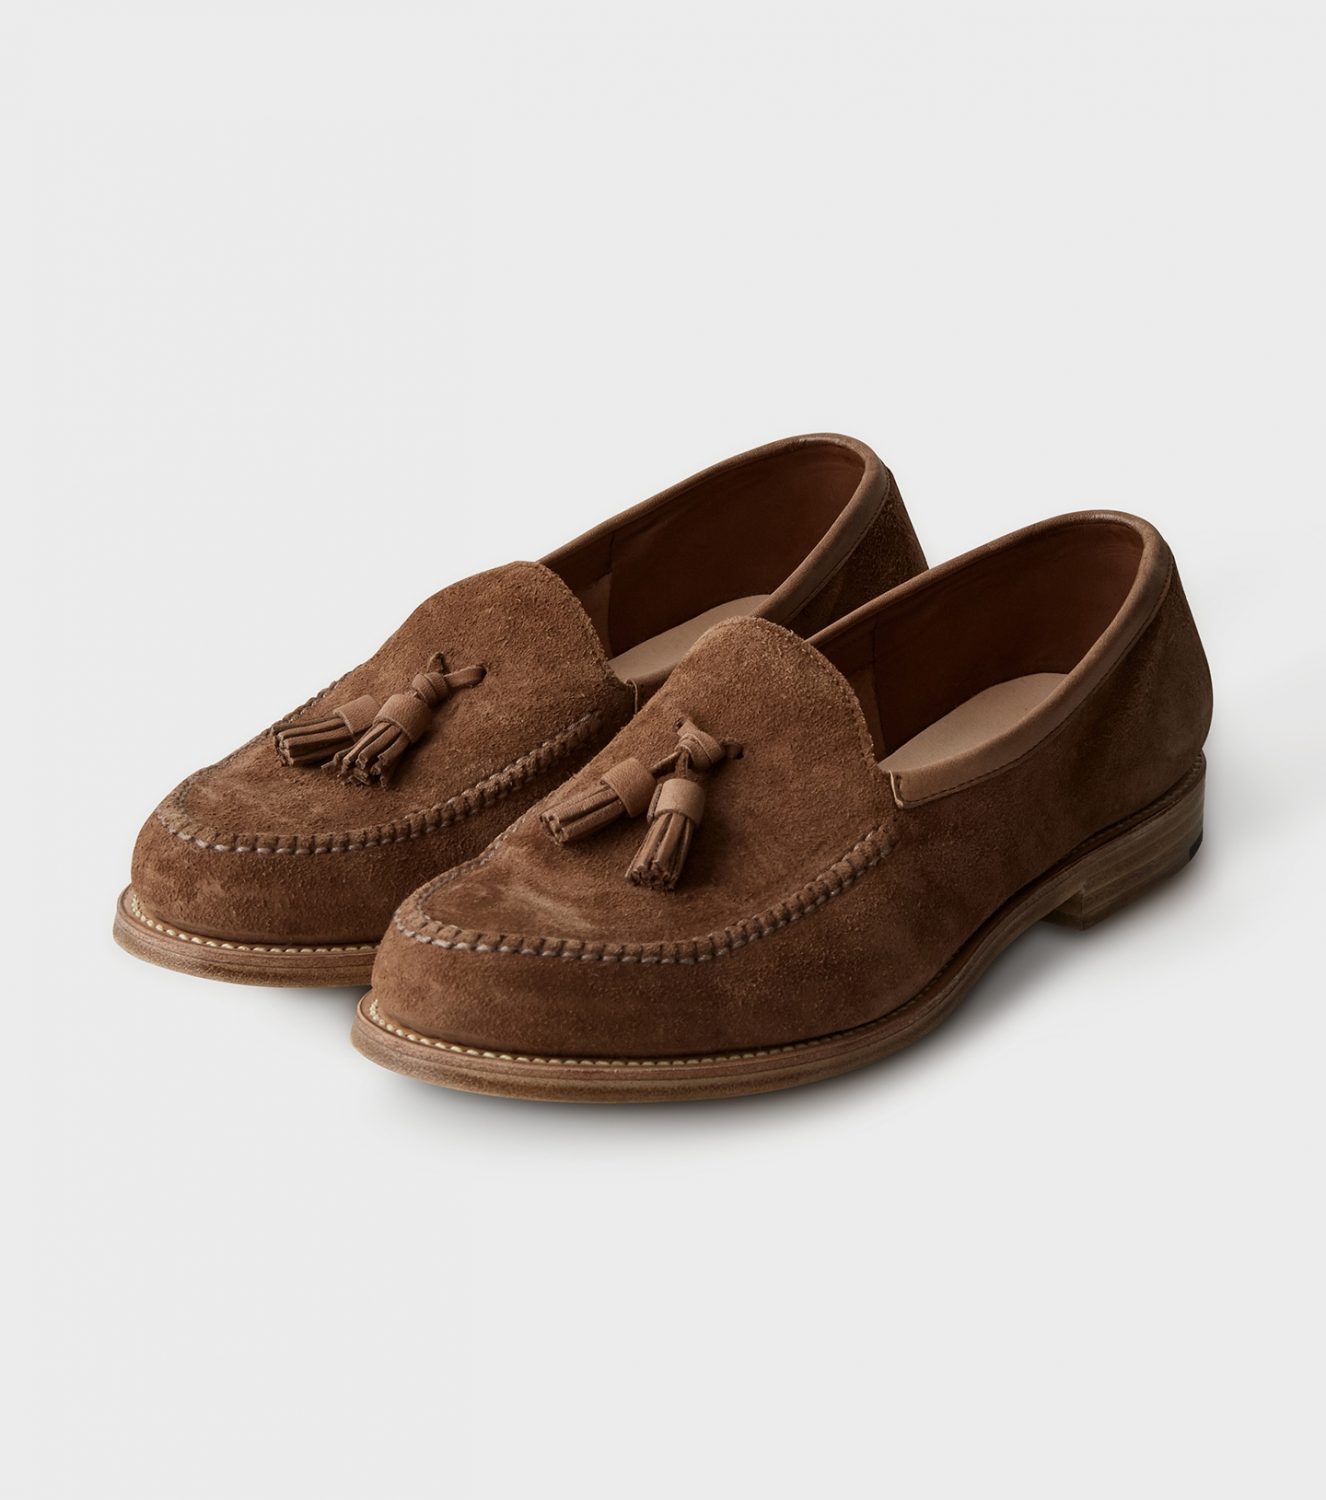 Seasonal Product “Tasseled Loafer”